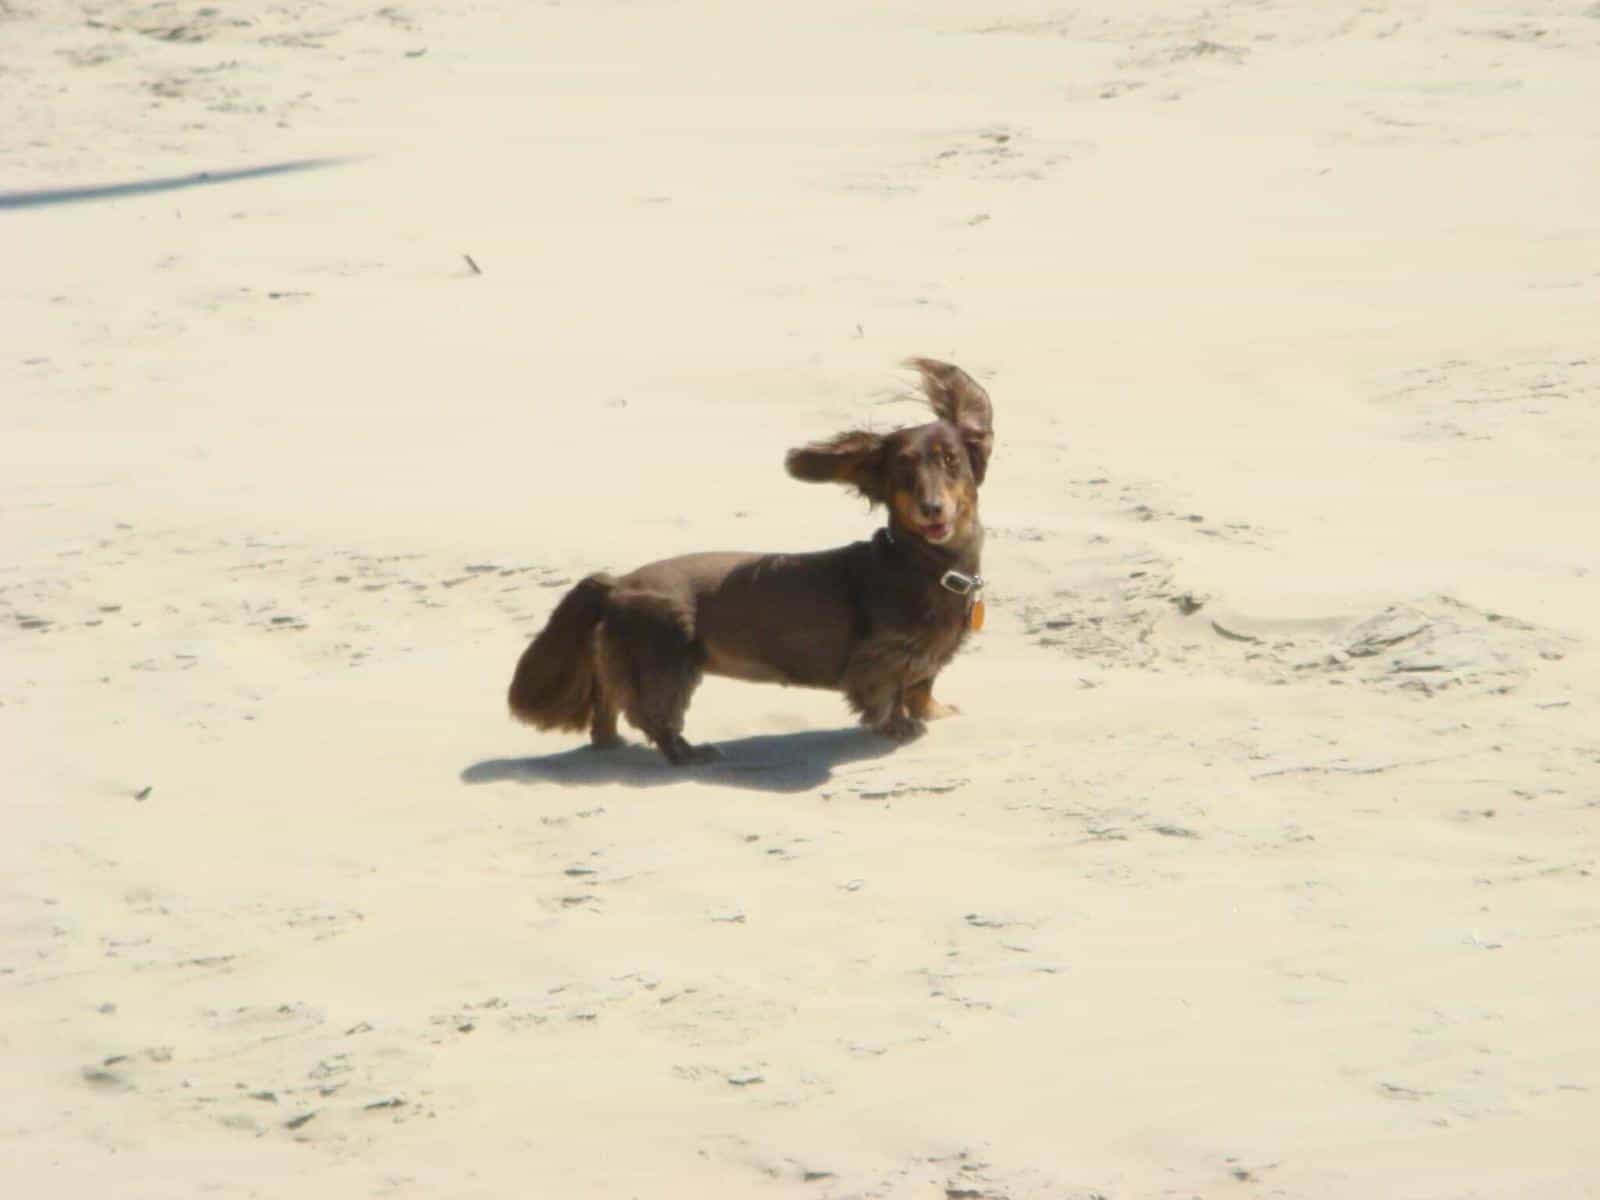 Puppy in sand